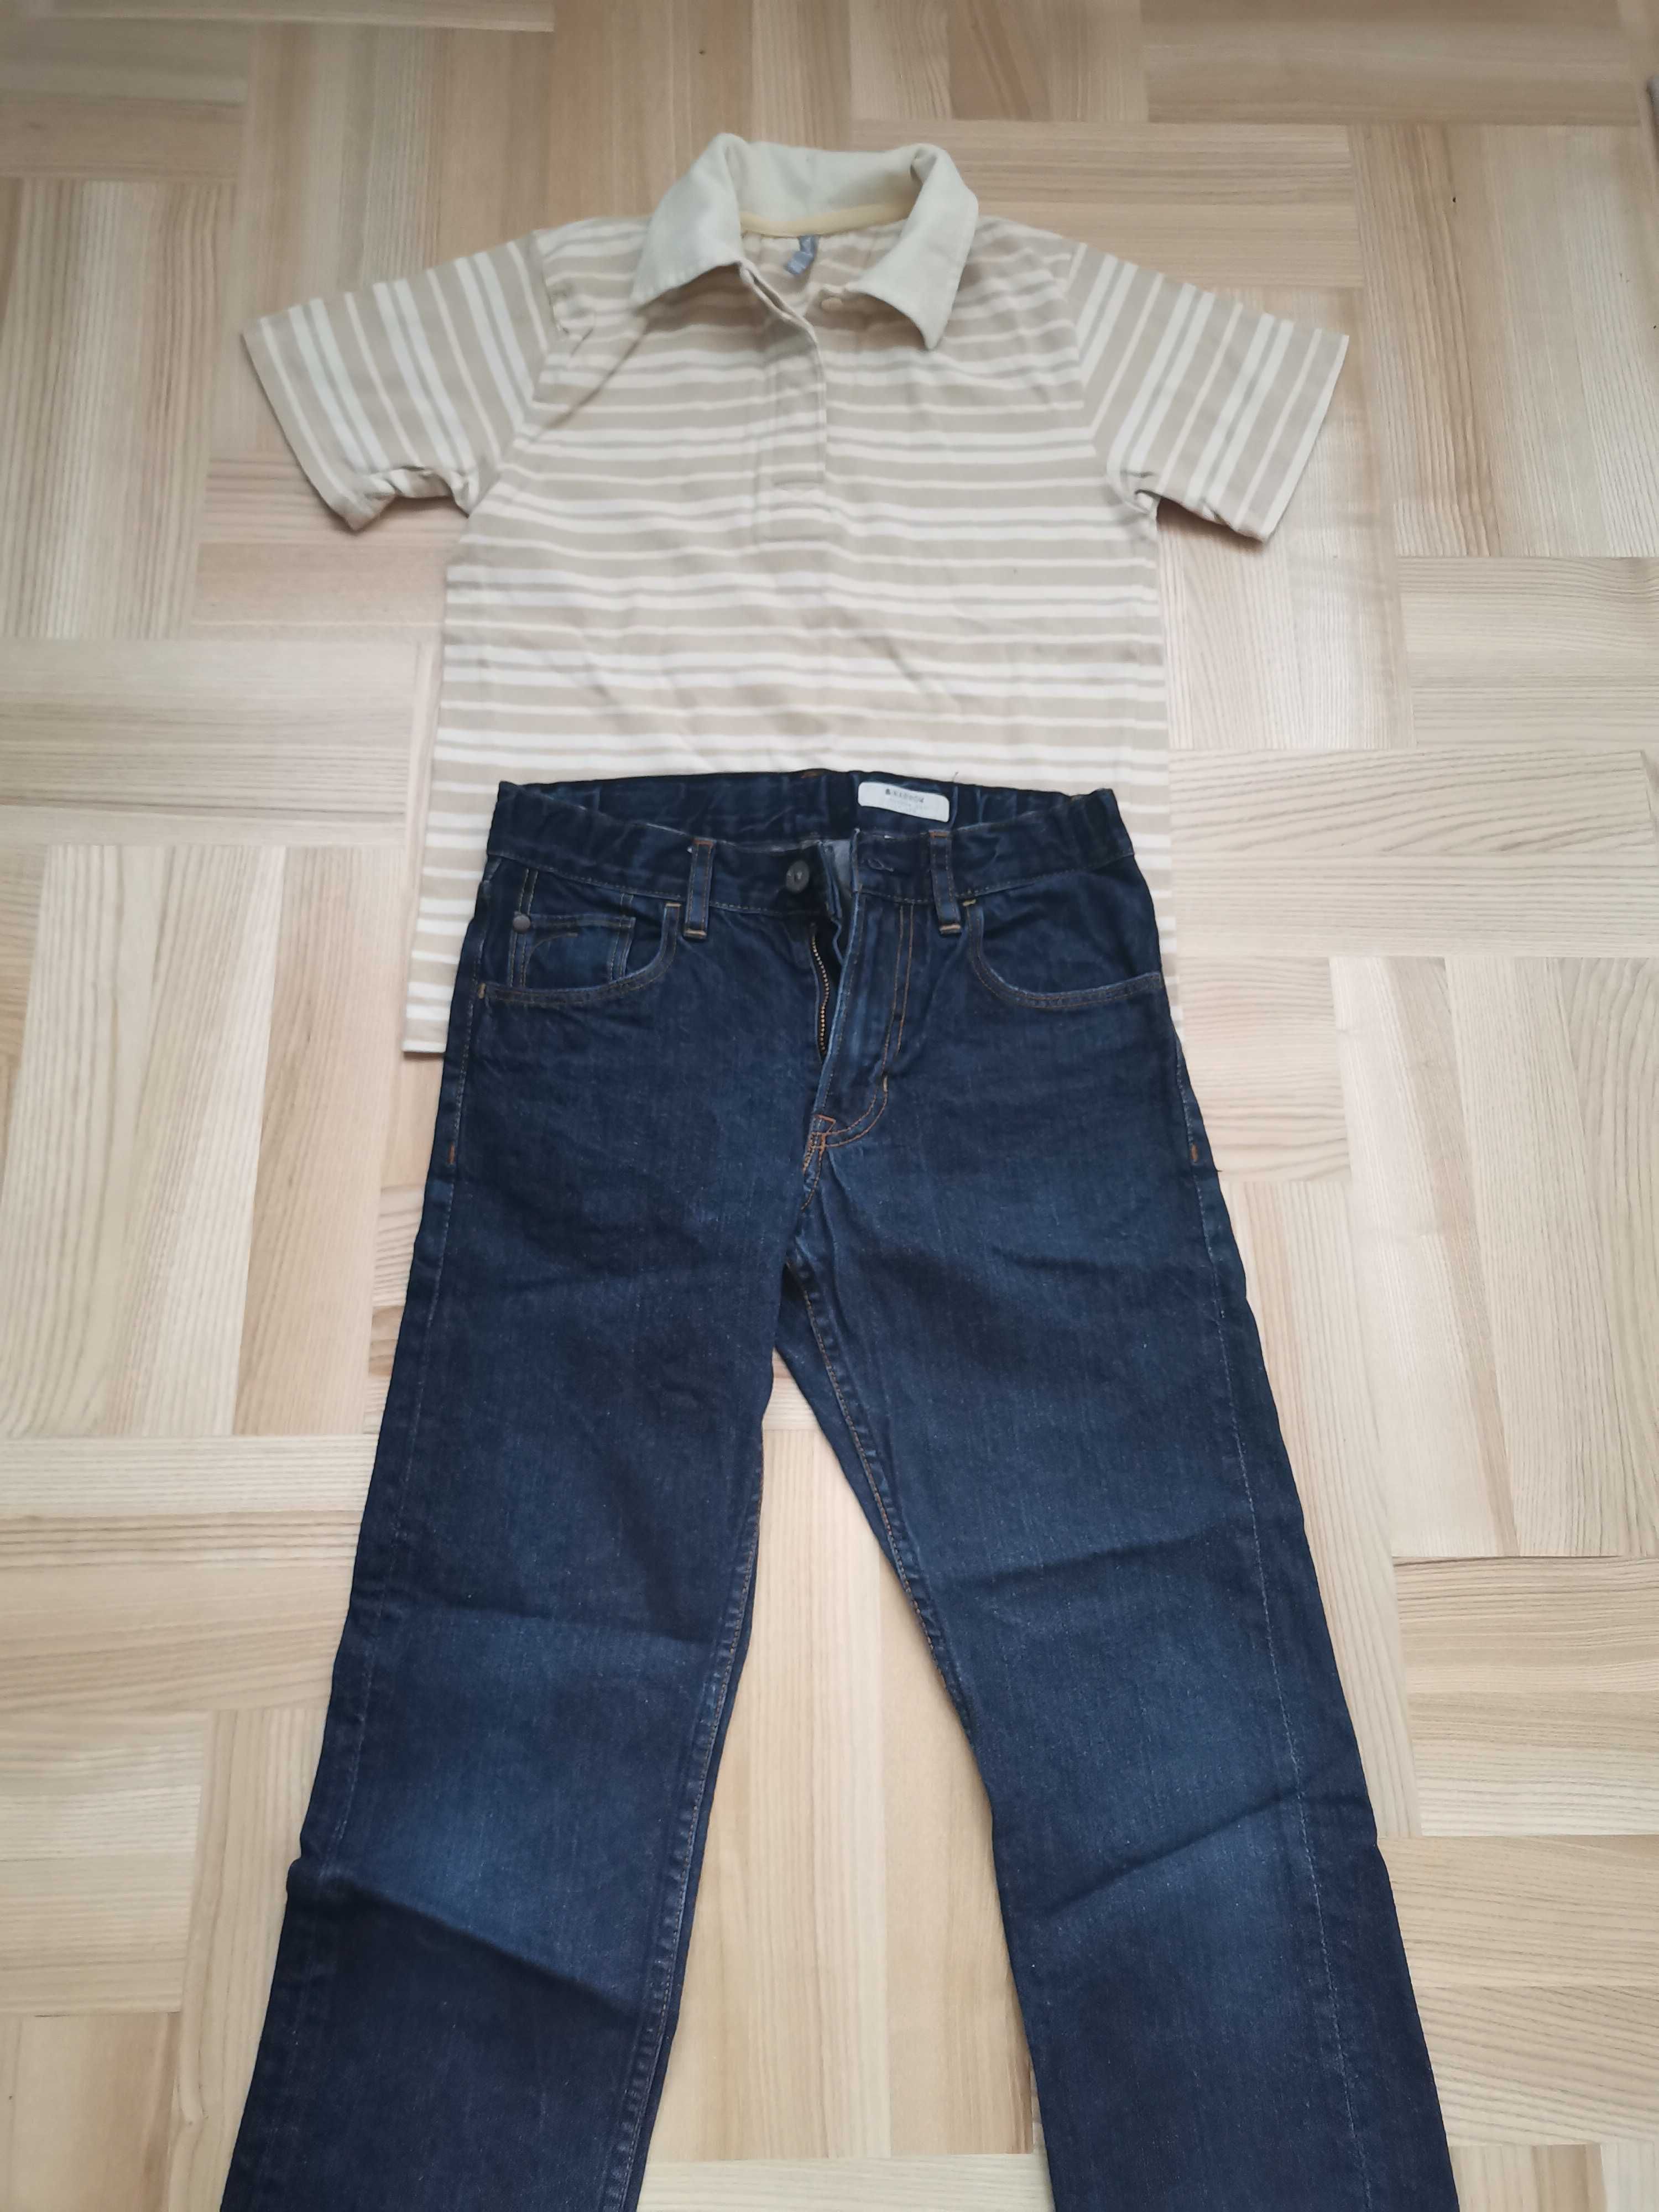 Spodnie chłopięce H&m i koszulka chłopięca - zestaw